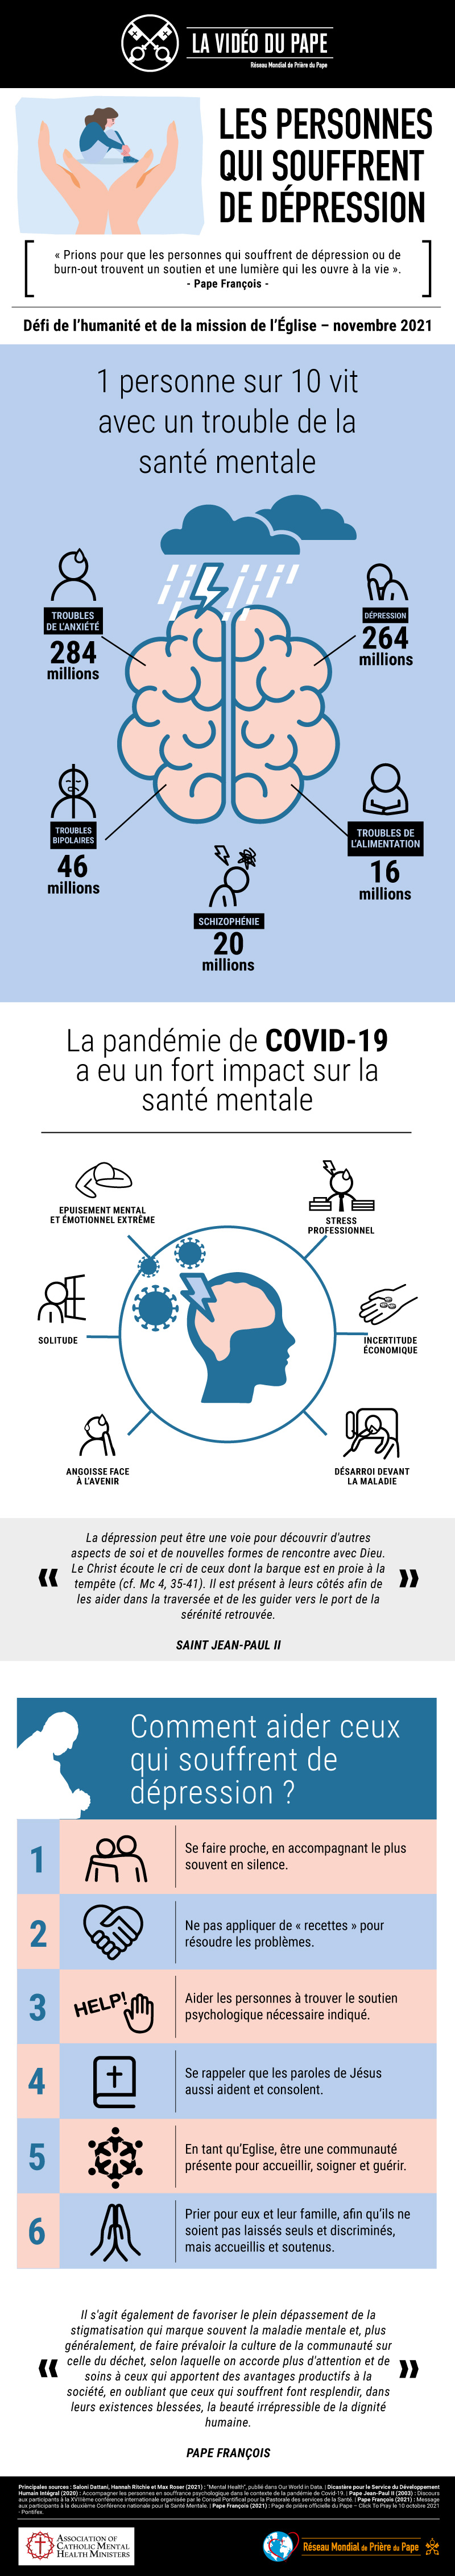 Infographic-TPV-11-2021-FR-Les-personnes-qui-souffrent-de-depression.jpg